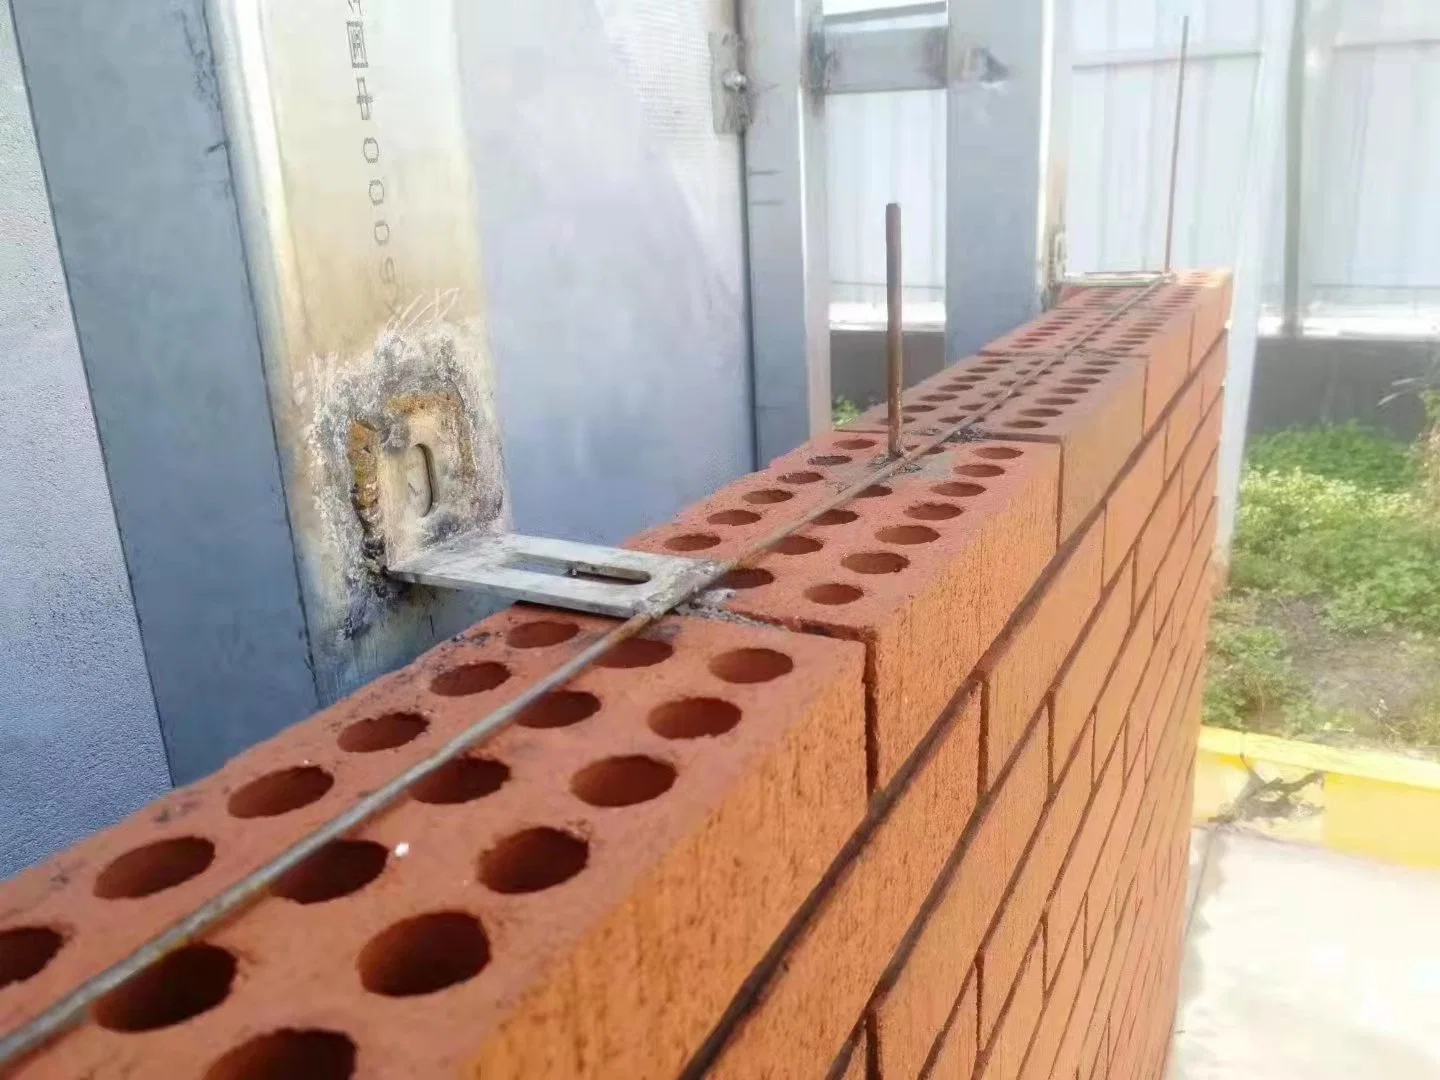 Togen ladrillos de arcilla perforada para panel de pared exterior revestimiento de mosaico Decoración